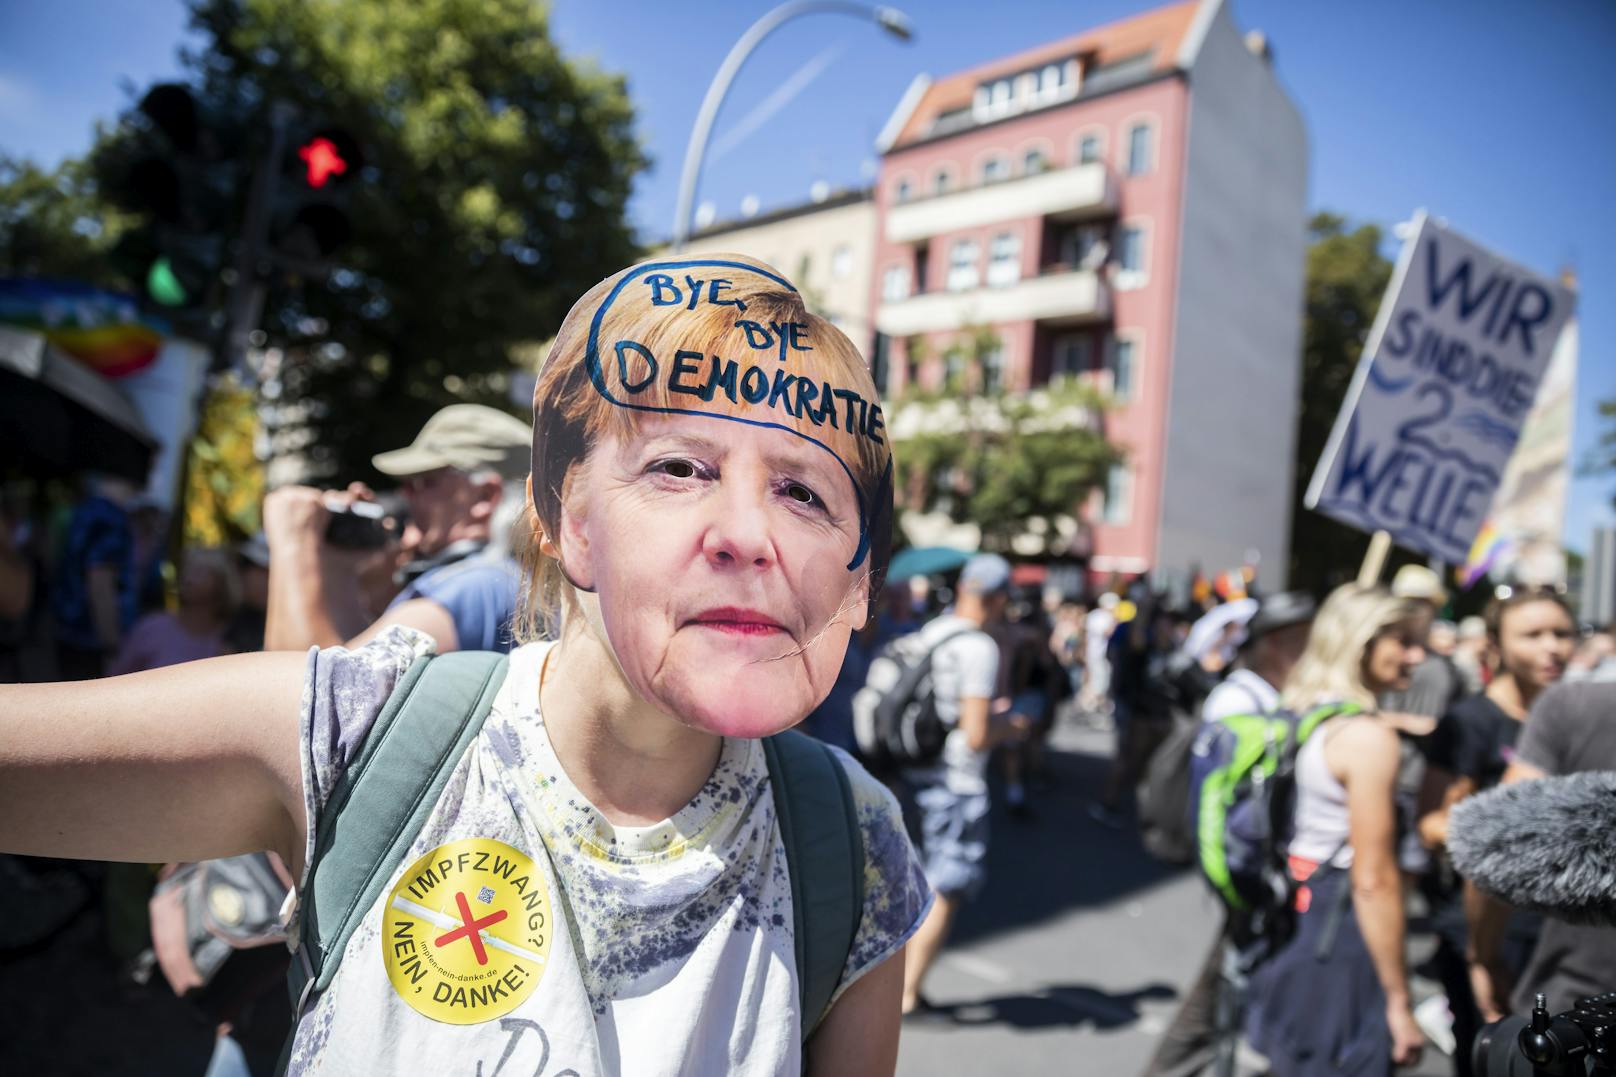 Bilder der Großdemo gegen Corona-Maßnahmen der Gegen-Demos in Berlin am 1. August 2020